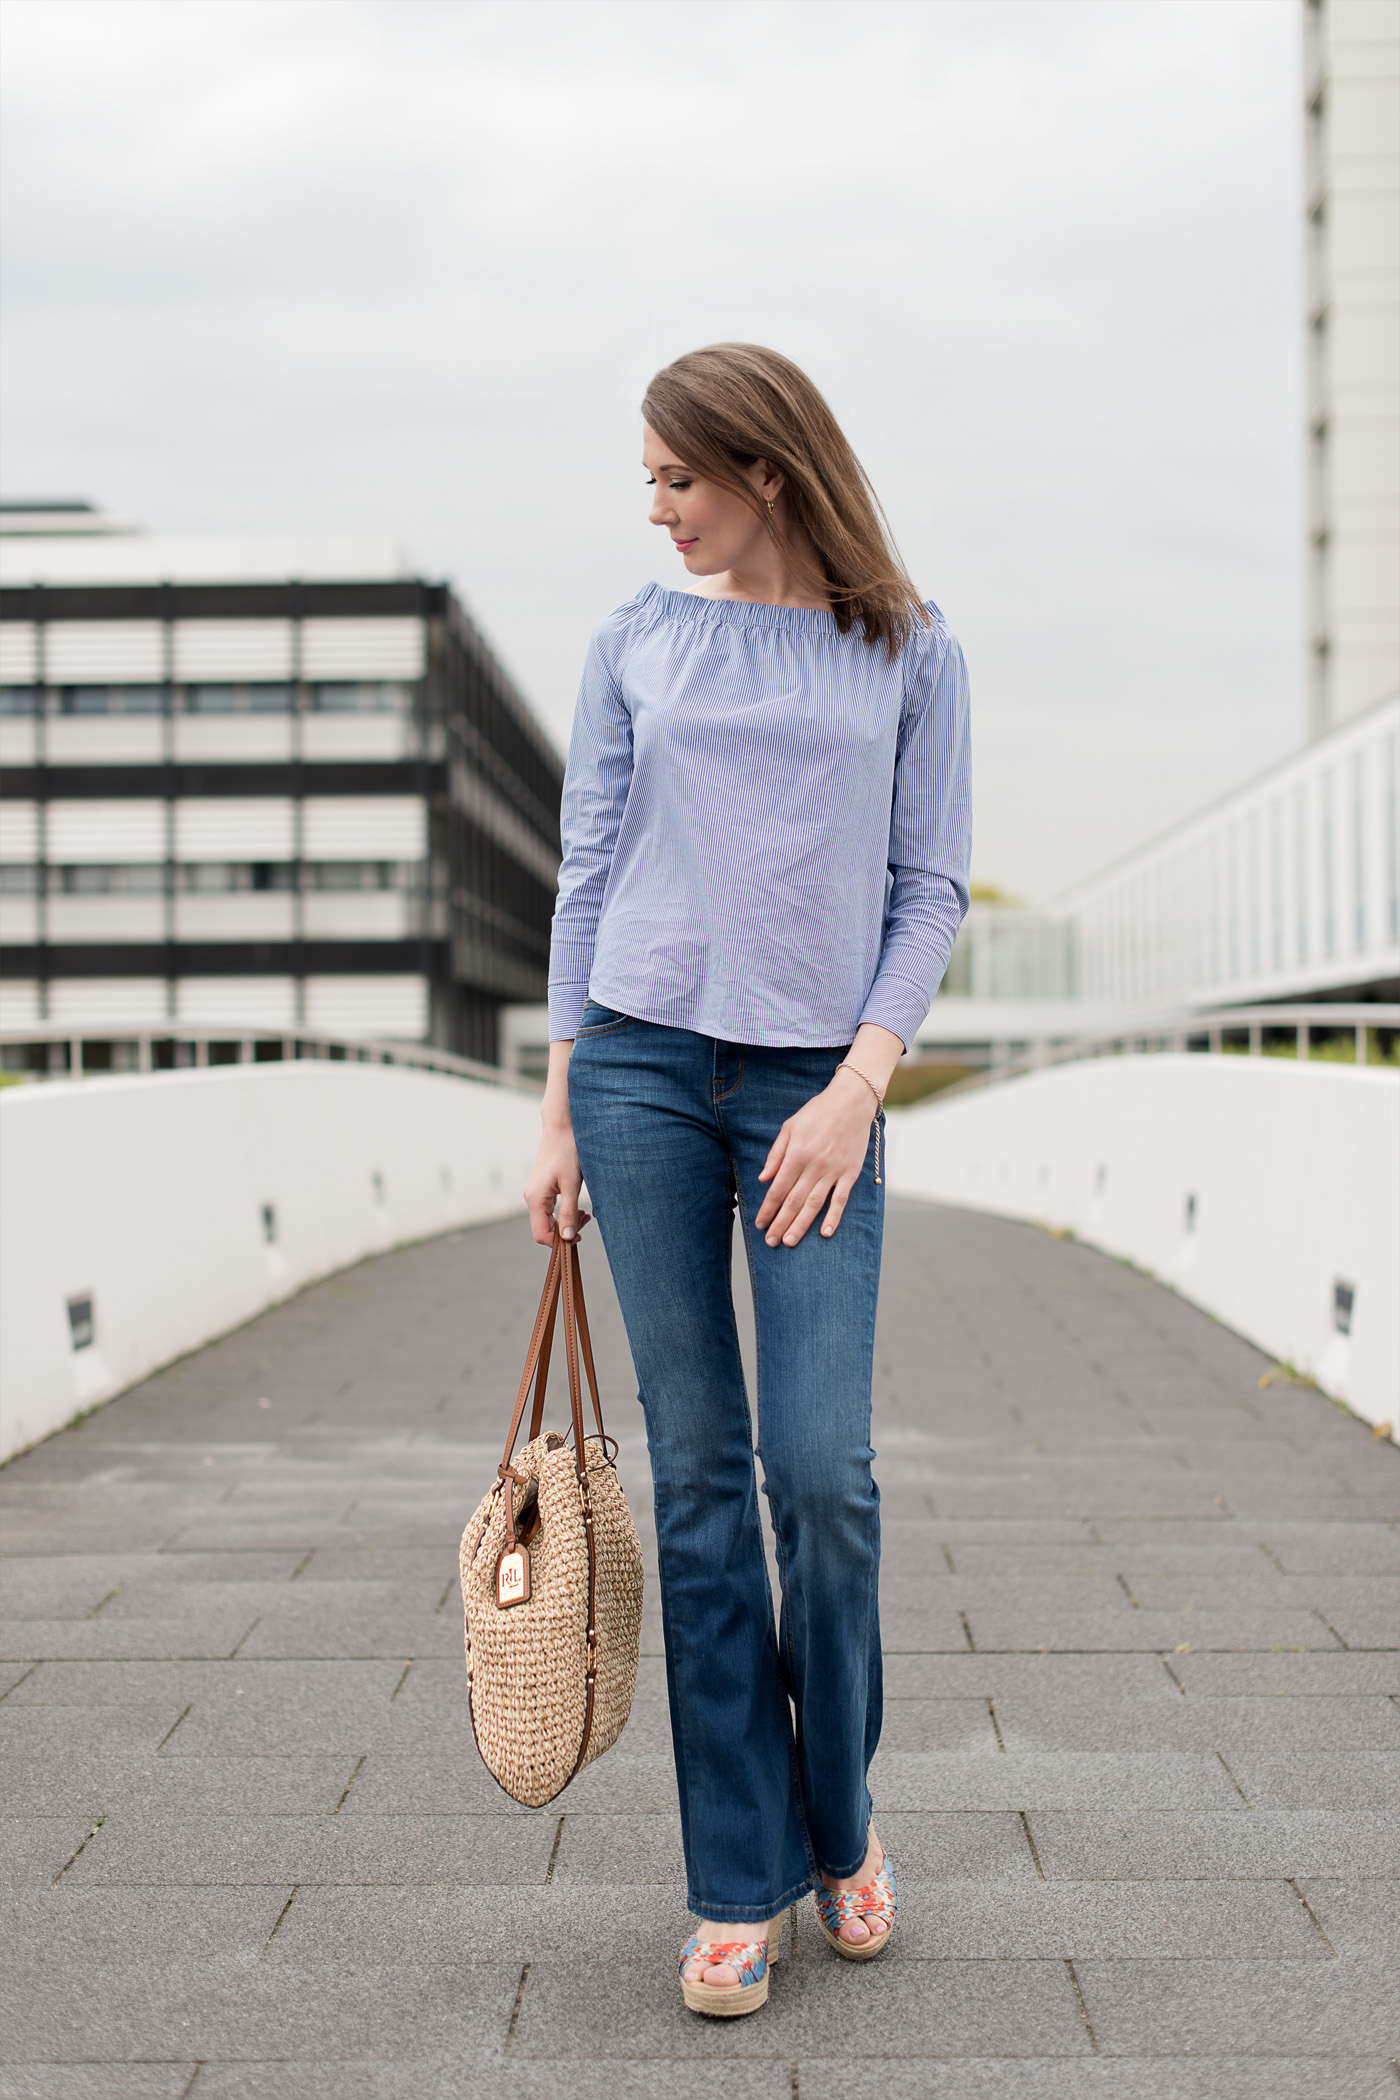 Zara Jeans im 70 Jahre Stil mit Schlag, eine schulterfrei Bluse mit Carmenausschnitt, Shopping Bag von Ralph Lauren.